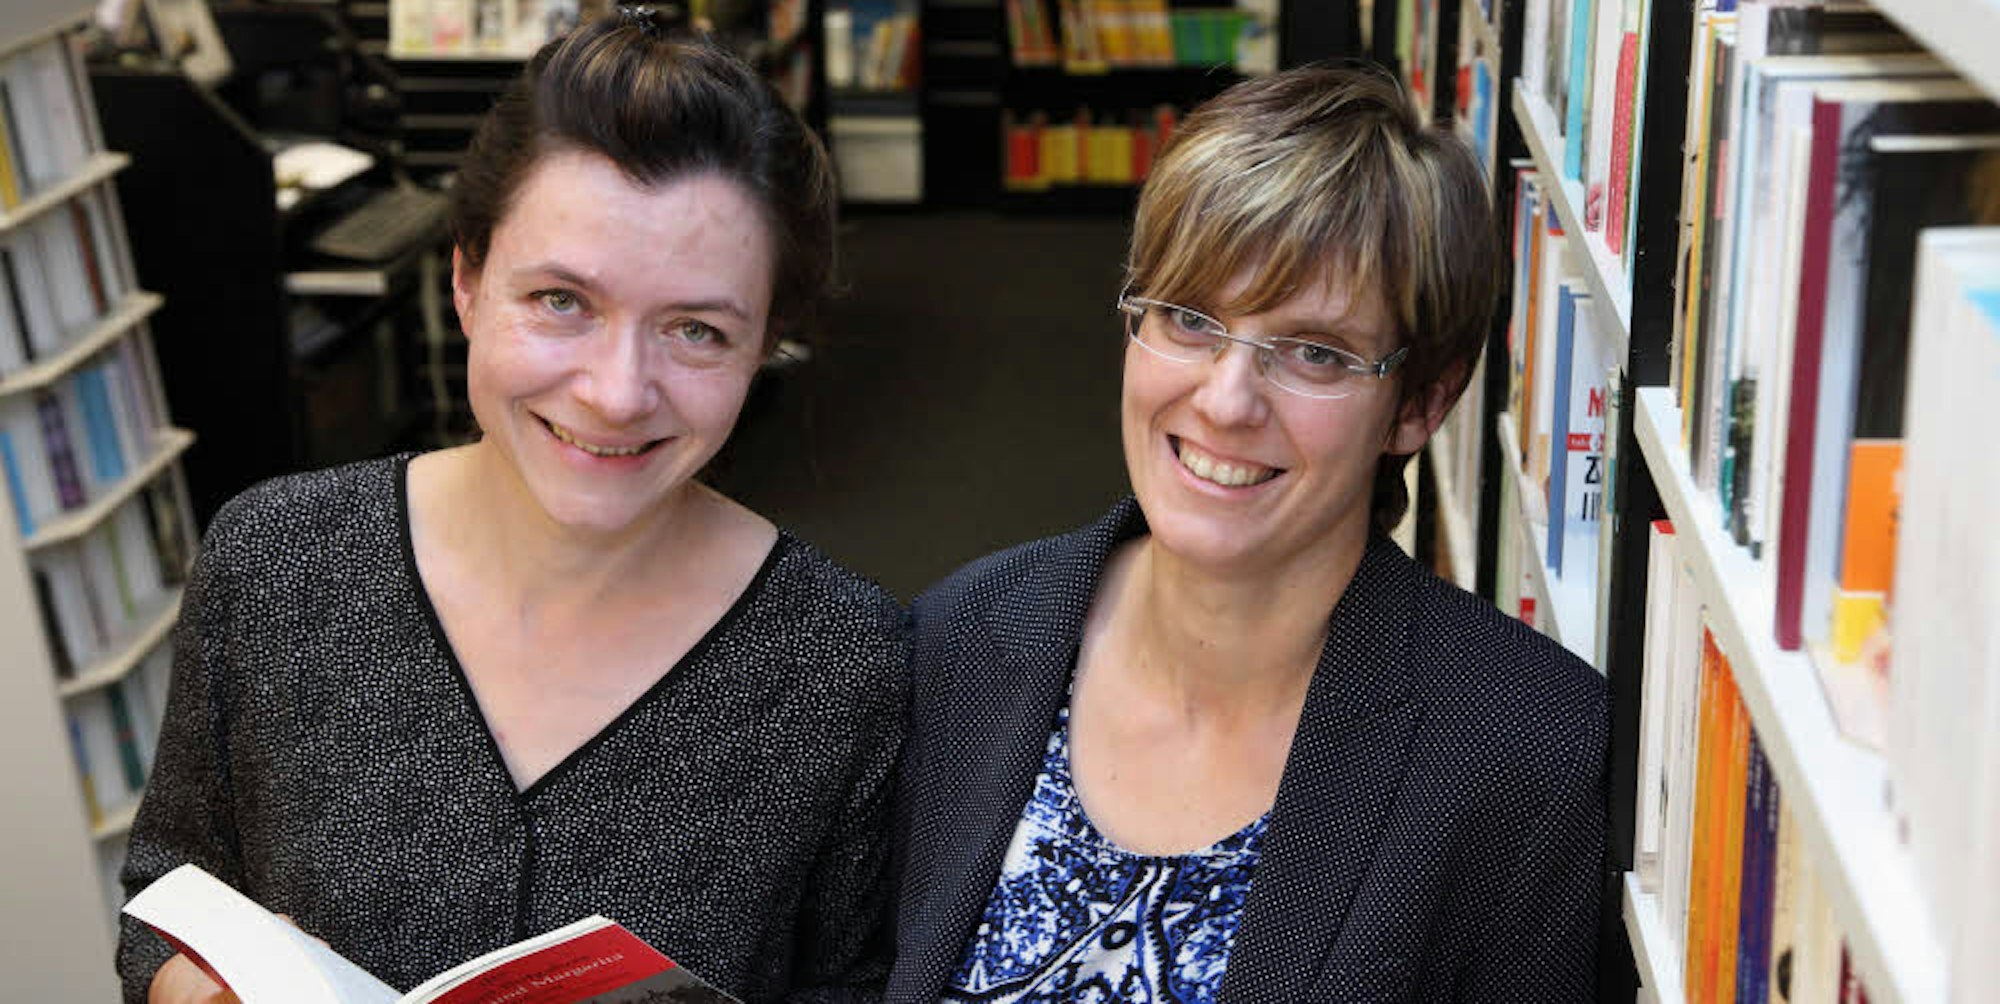 Birgit Jongebloed (links) und Pia Patt bieten den Kunden eine Bücherauswahl, die sie persönlich zusammengestellt haben. Sie schaffen auch Raum zum Gespräch.